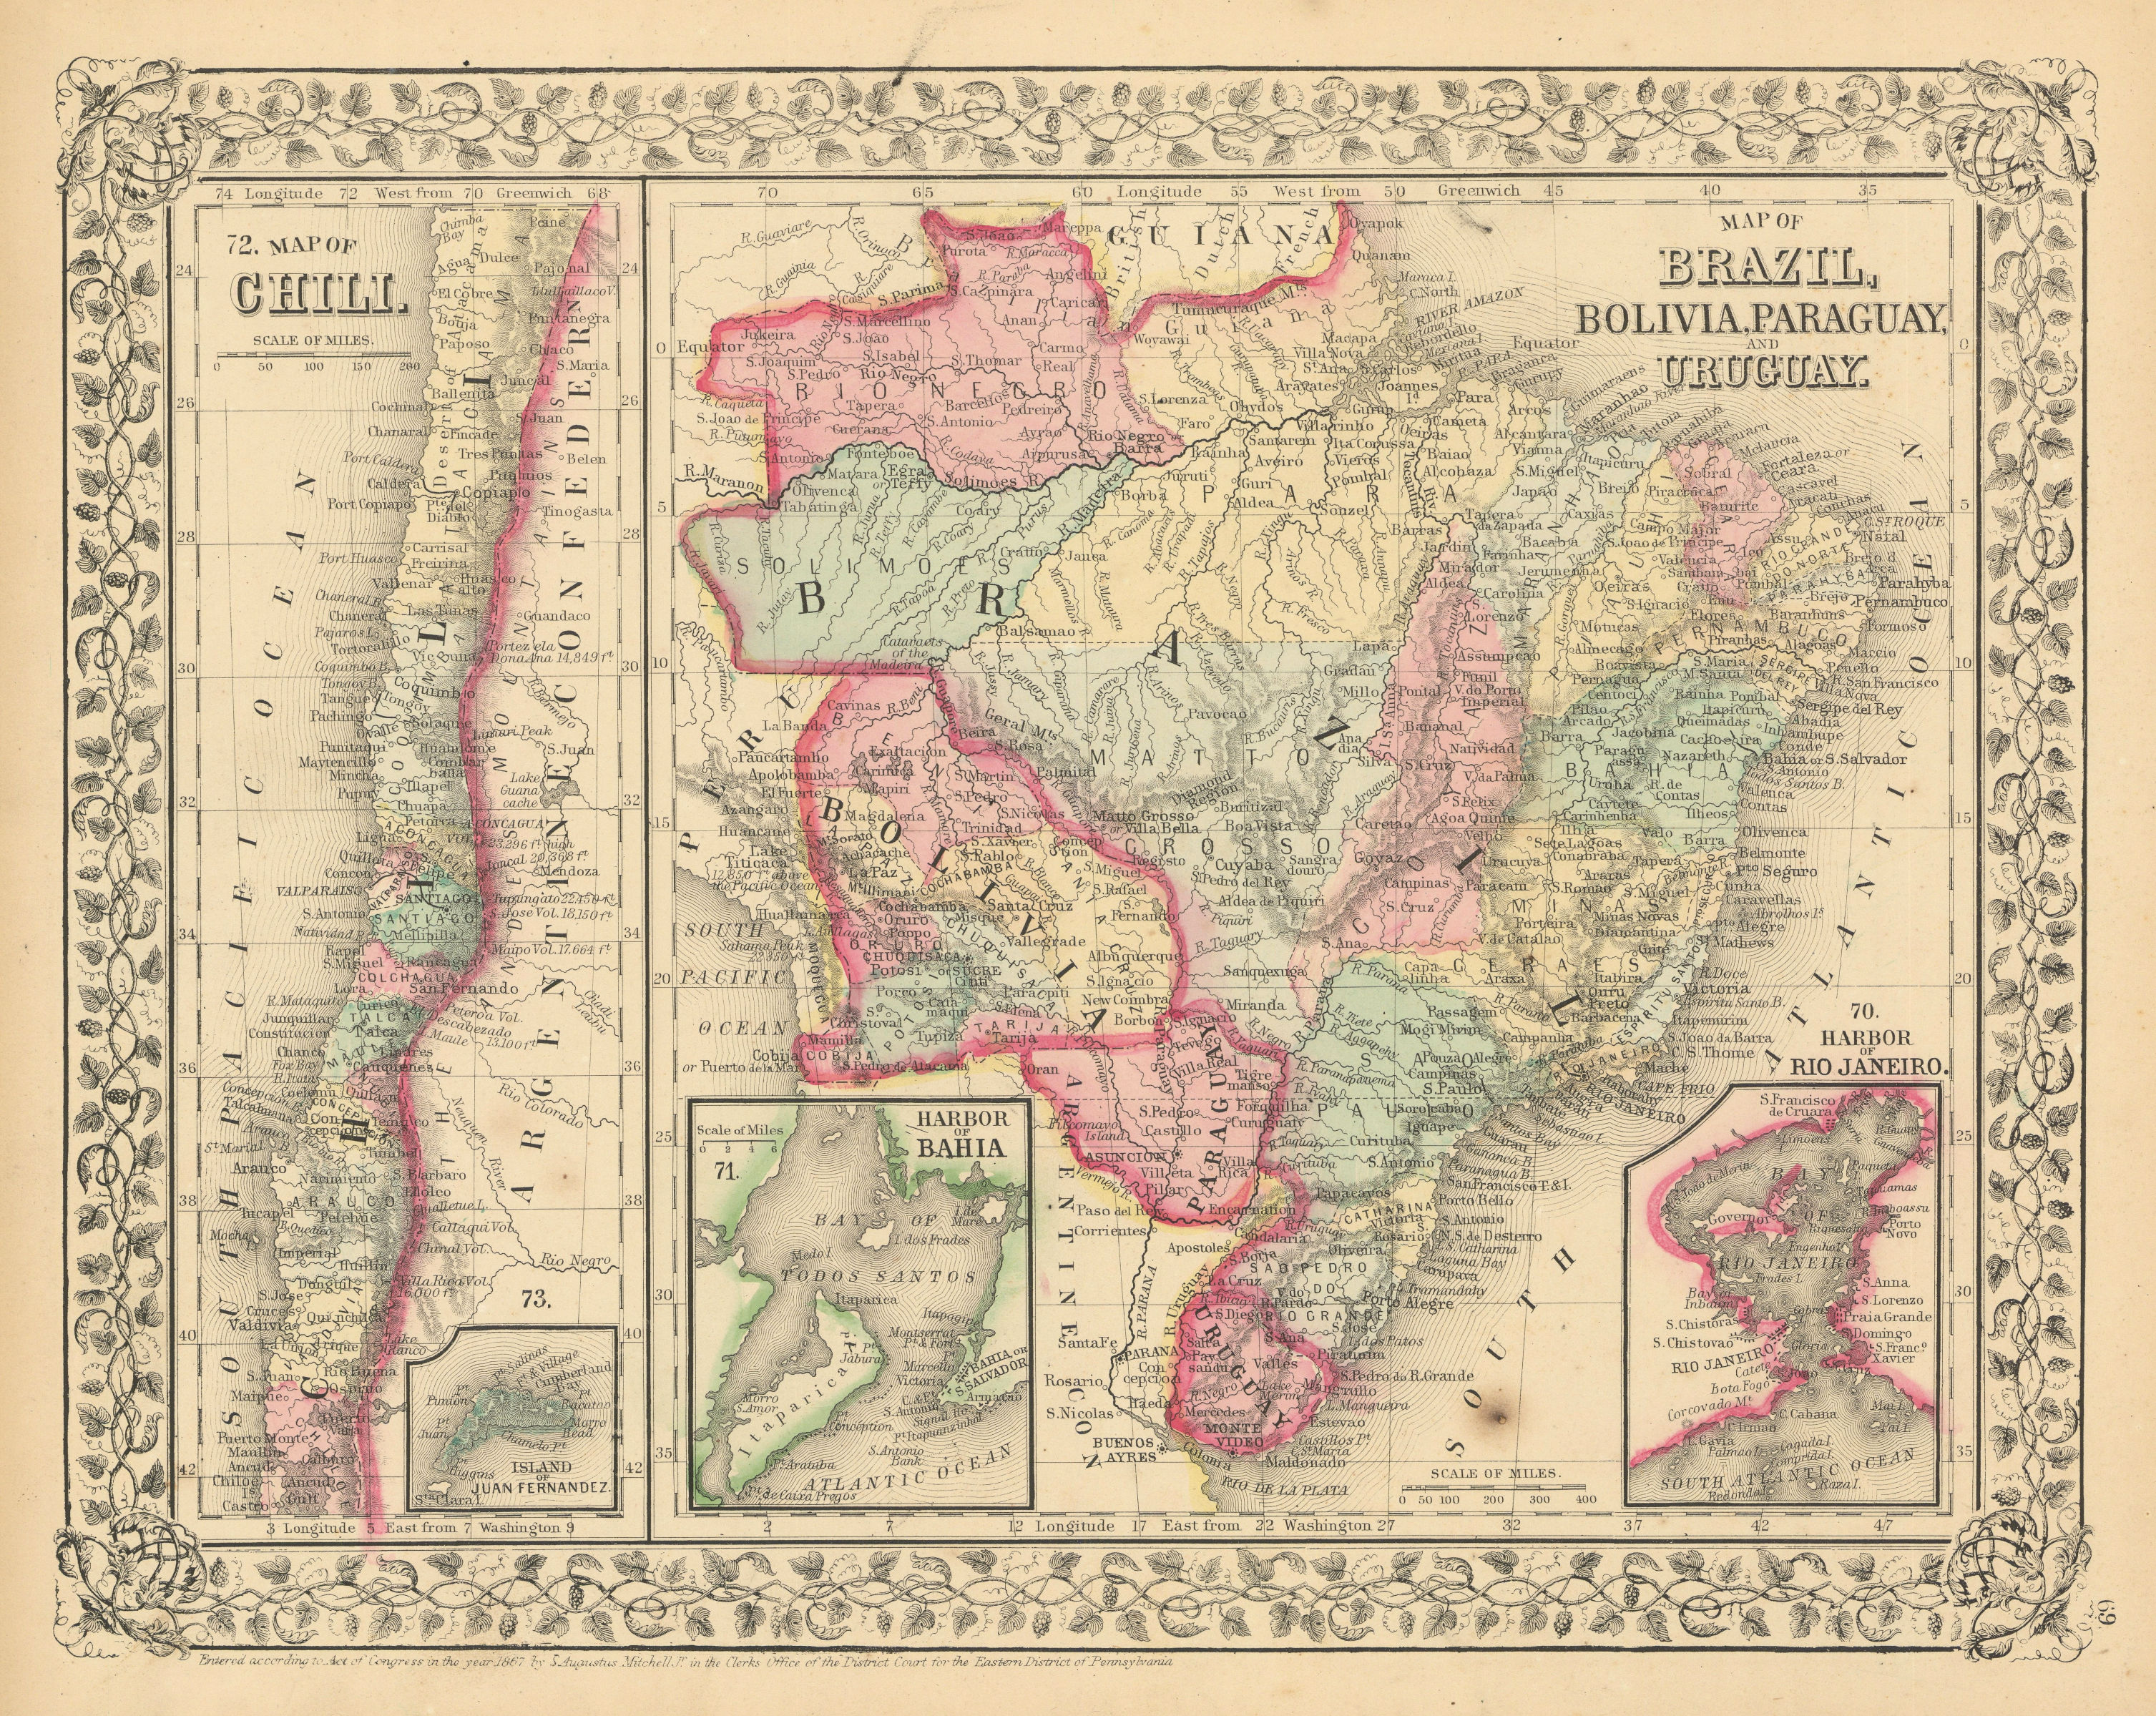 Brazil Bolivia Paraguay Uruguay Chile. Rio de Janeiro & Bahia. MITCHELL 1869 map